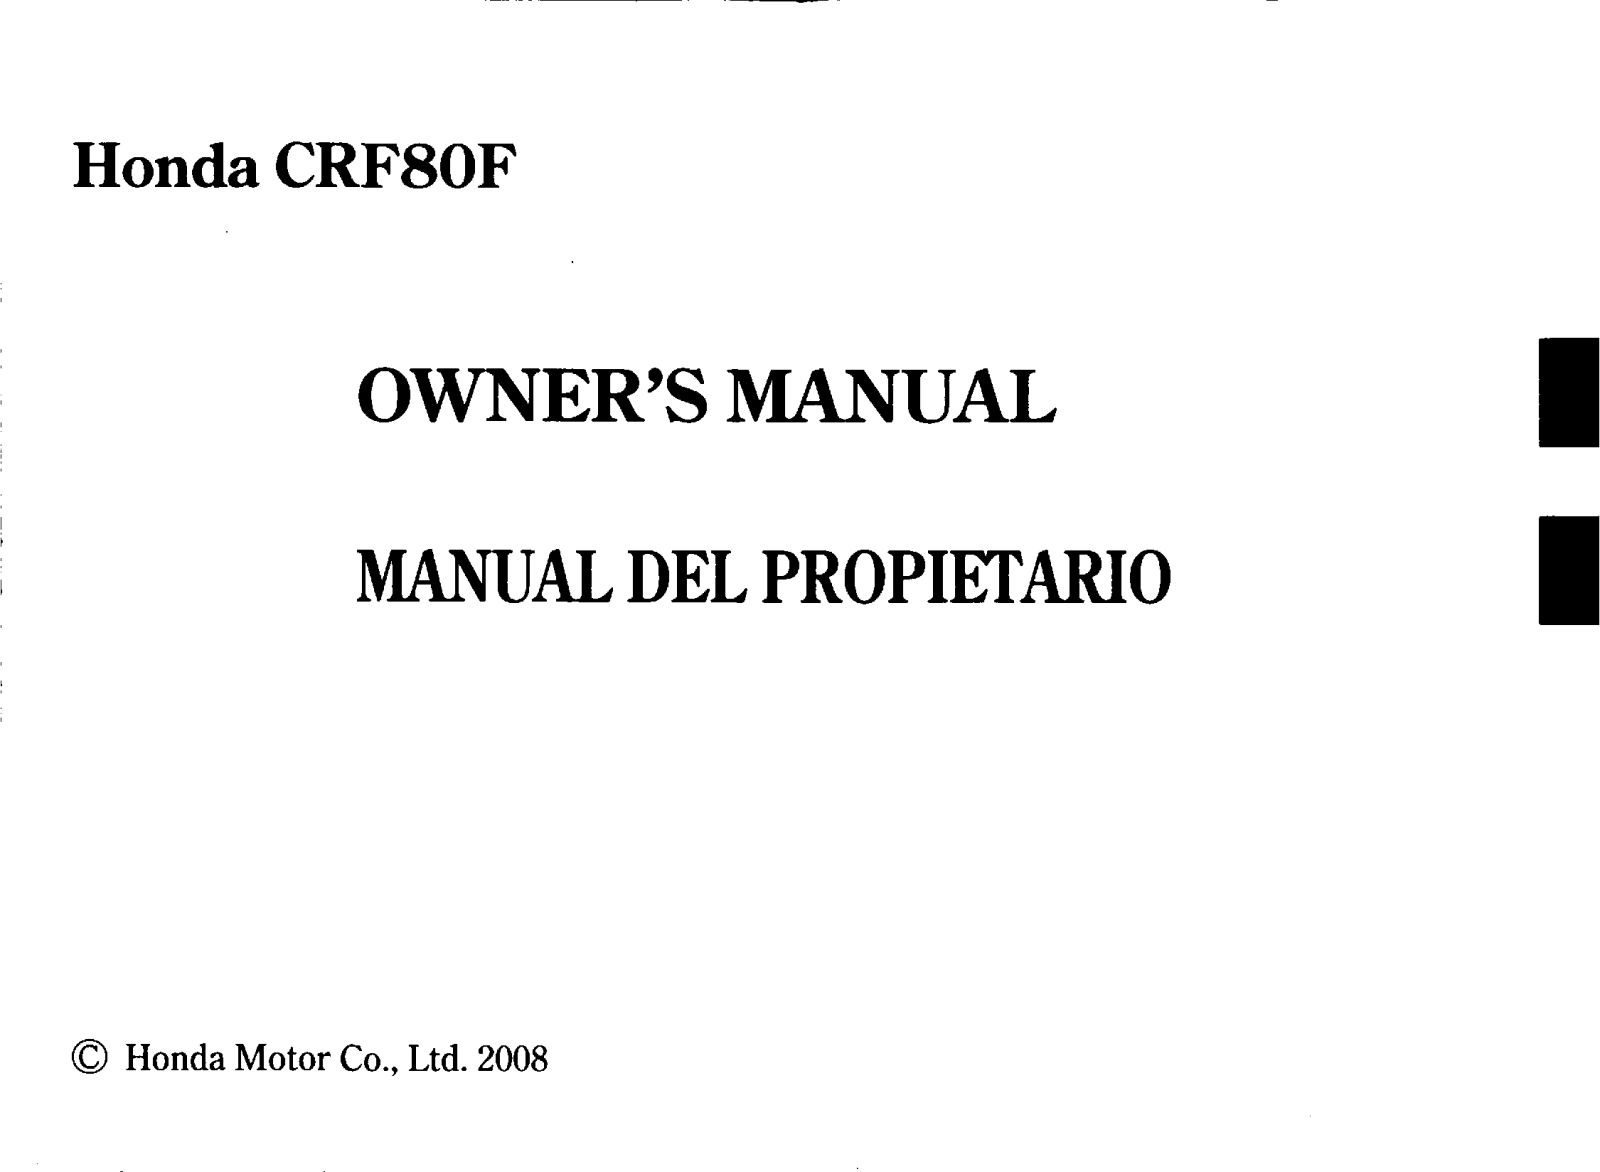 Honda CRF80F Owner's Manual